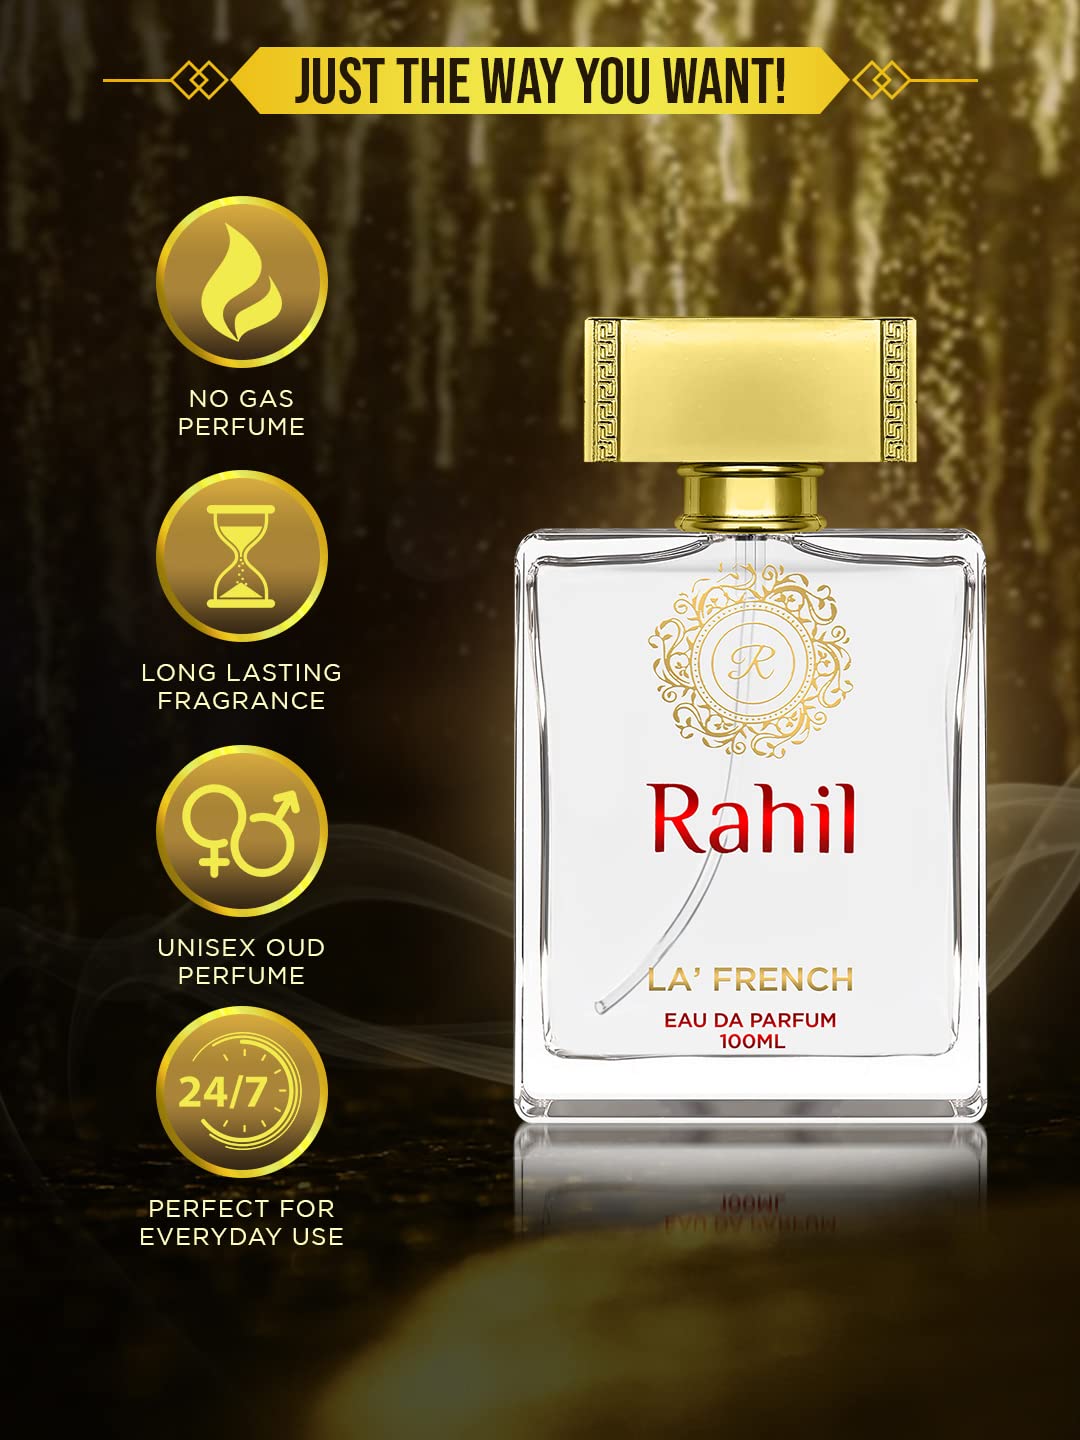 La French RAHIL Parfum, with Long Lasting Fragrances,  Eau de Parfum - 100 ml (For Men & Women)